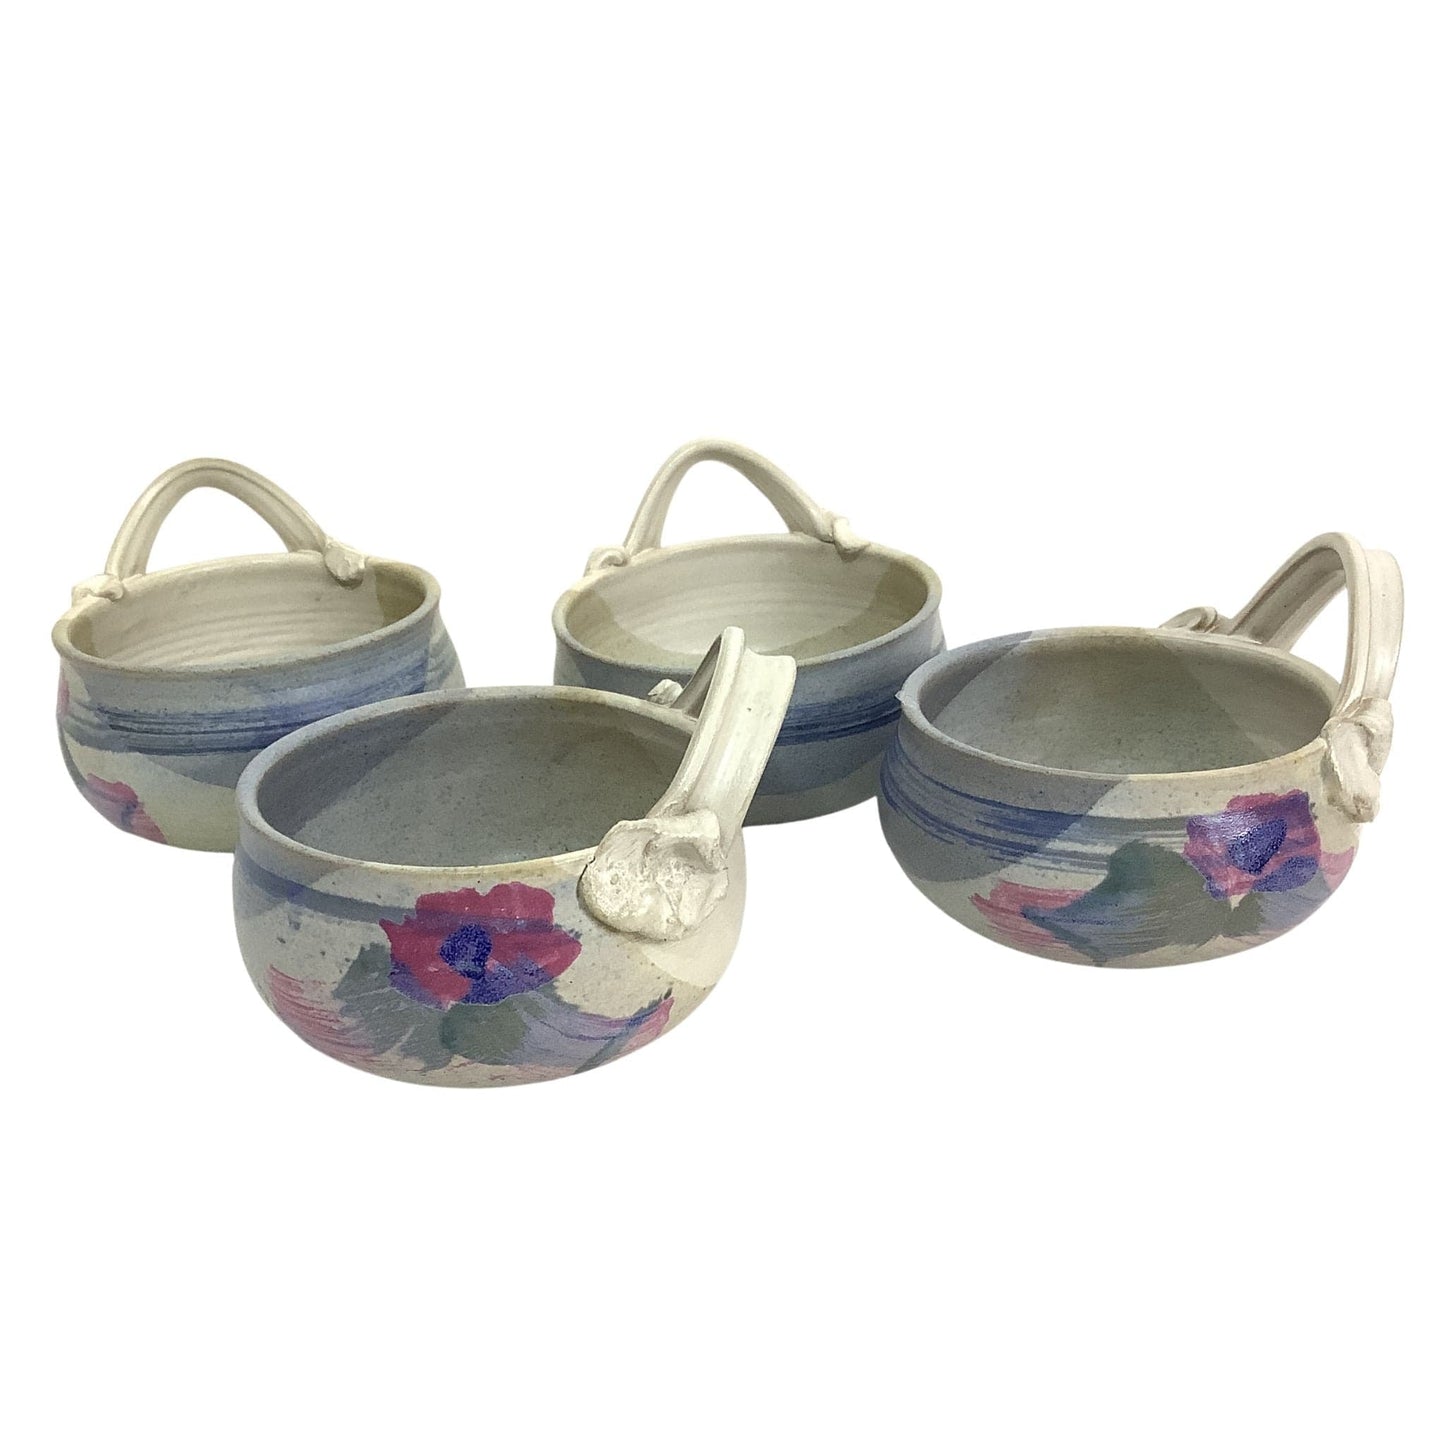 Studio Pottery Bowls Multi / Pottery / Cottage